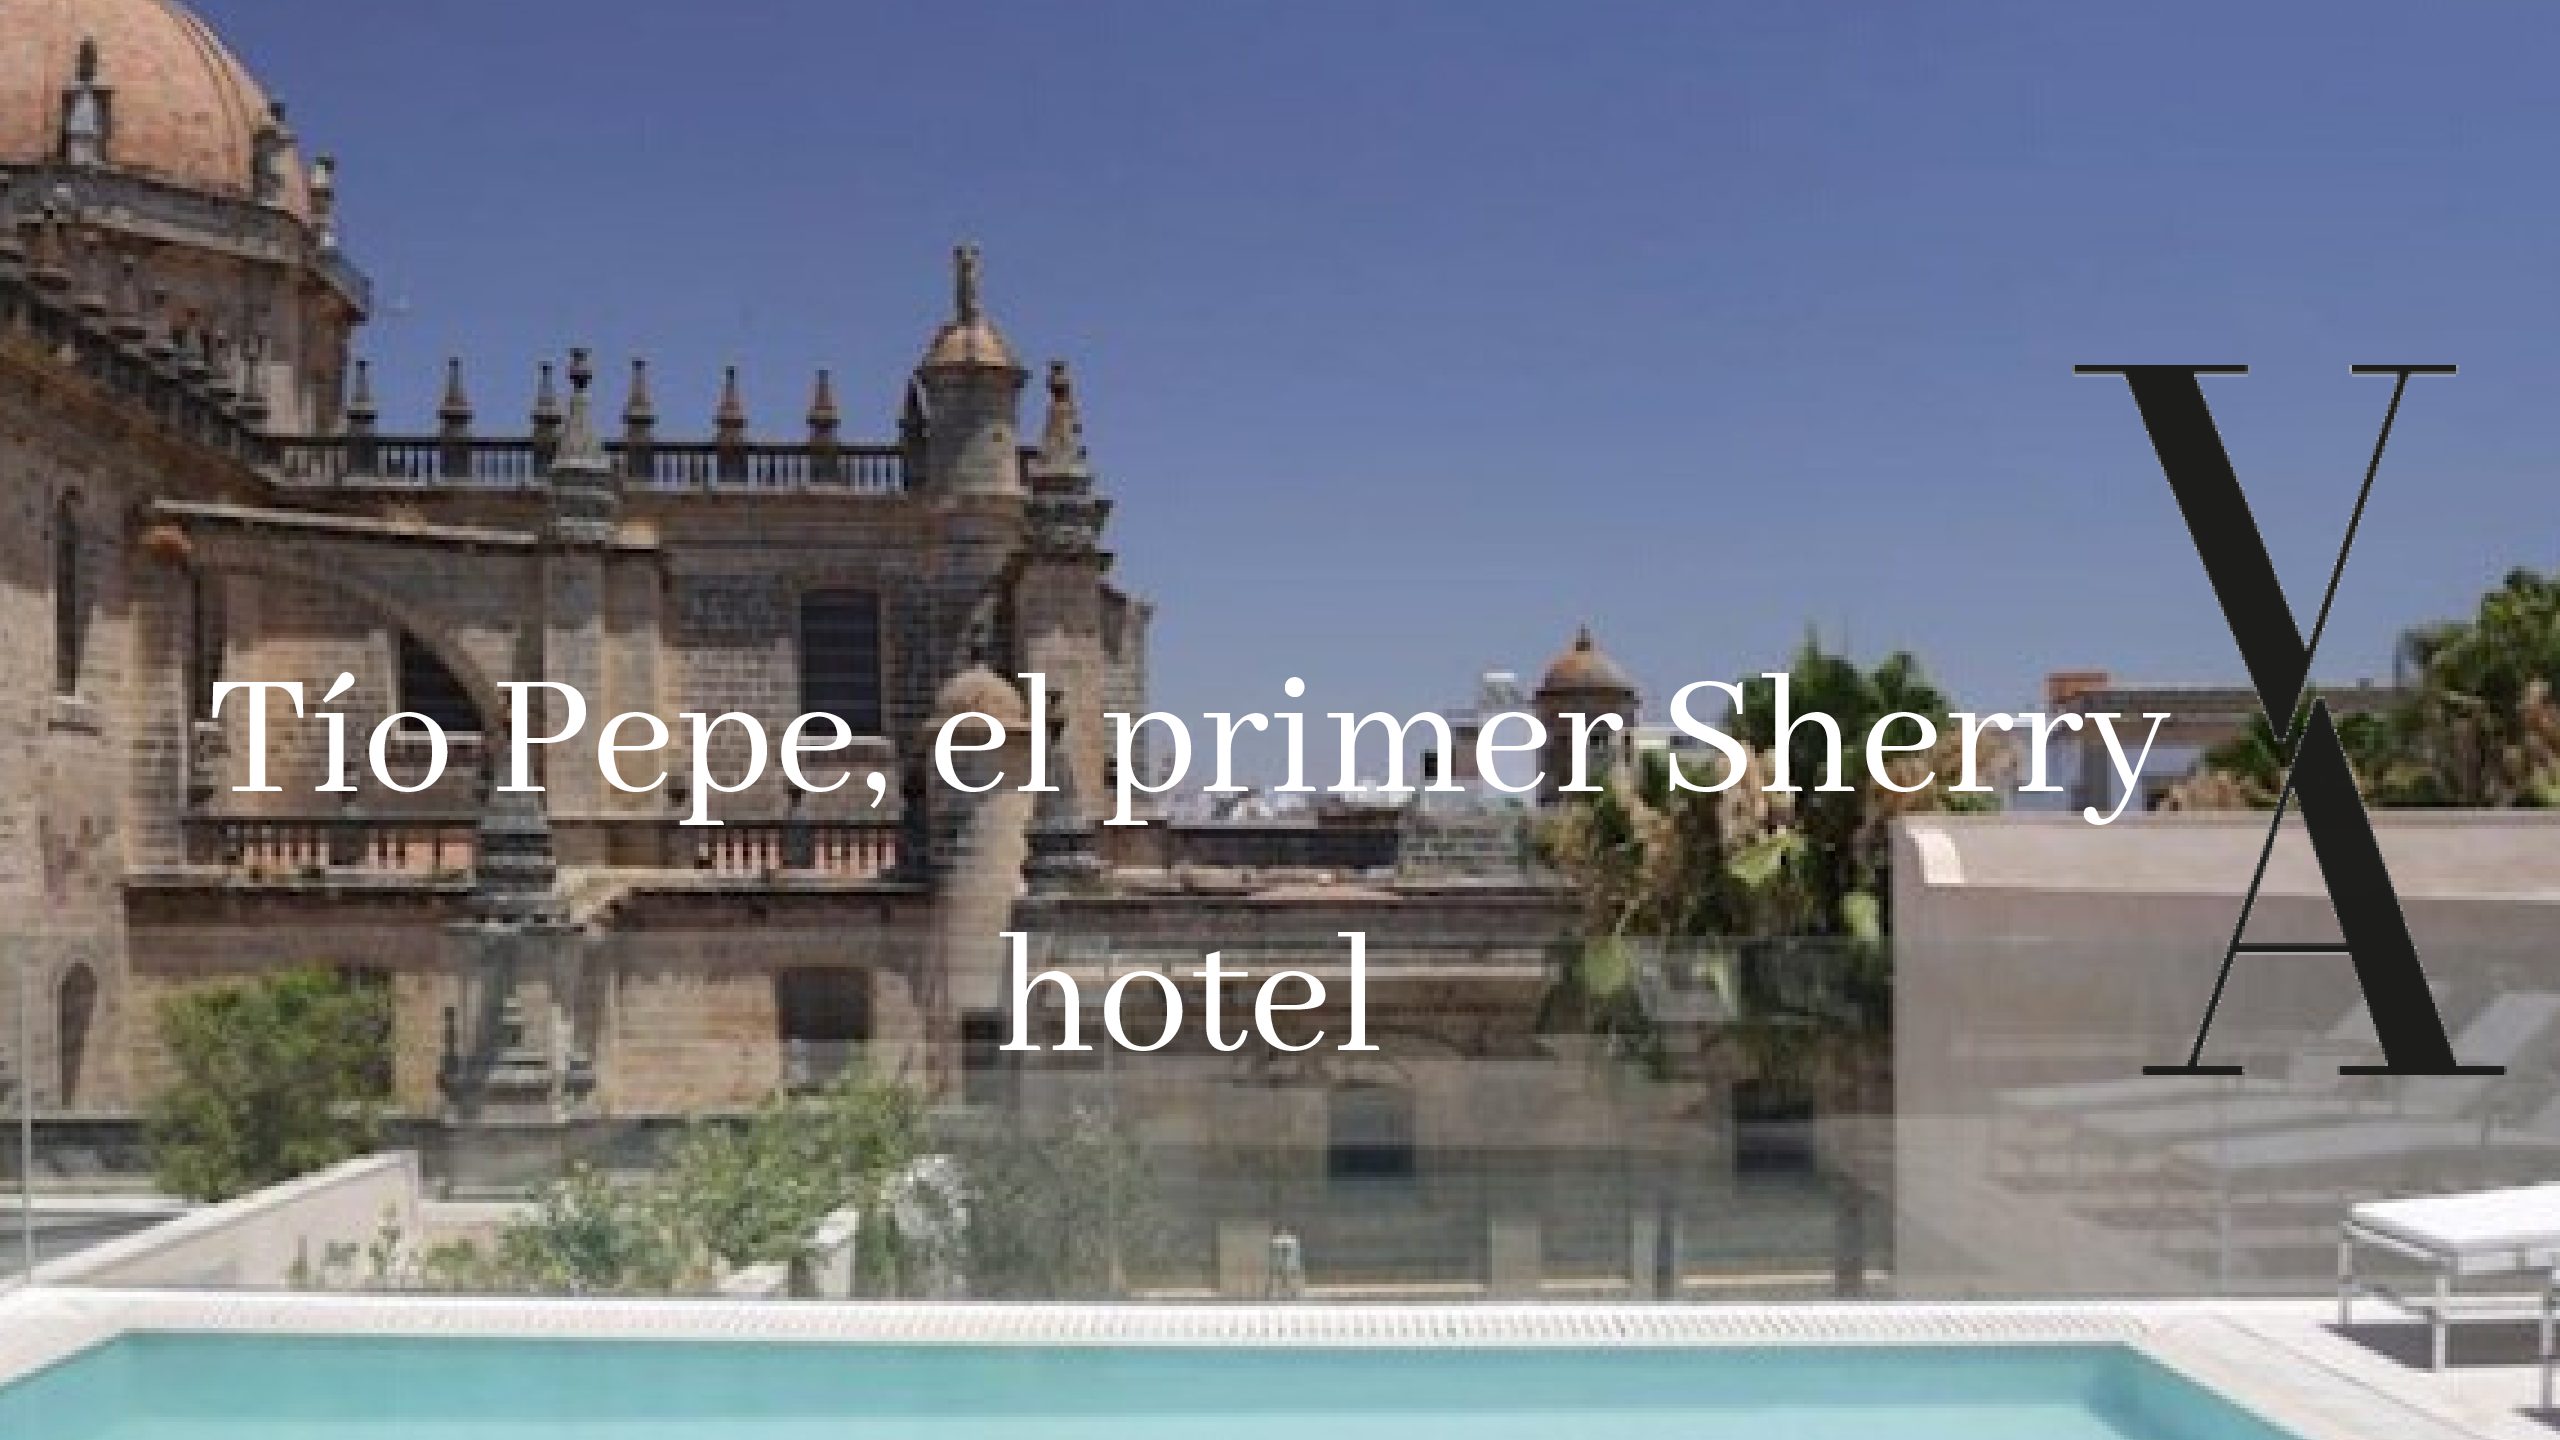 TÍO PEPE EL PRIMER SHERRY HOTEL DEL MUNDO